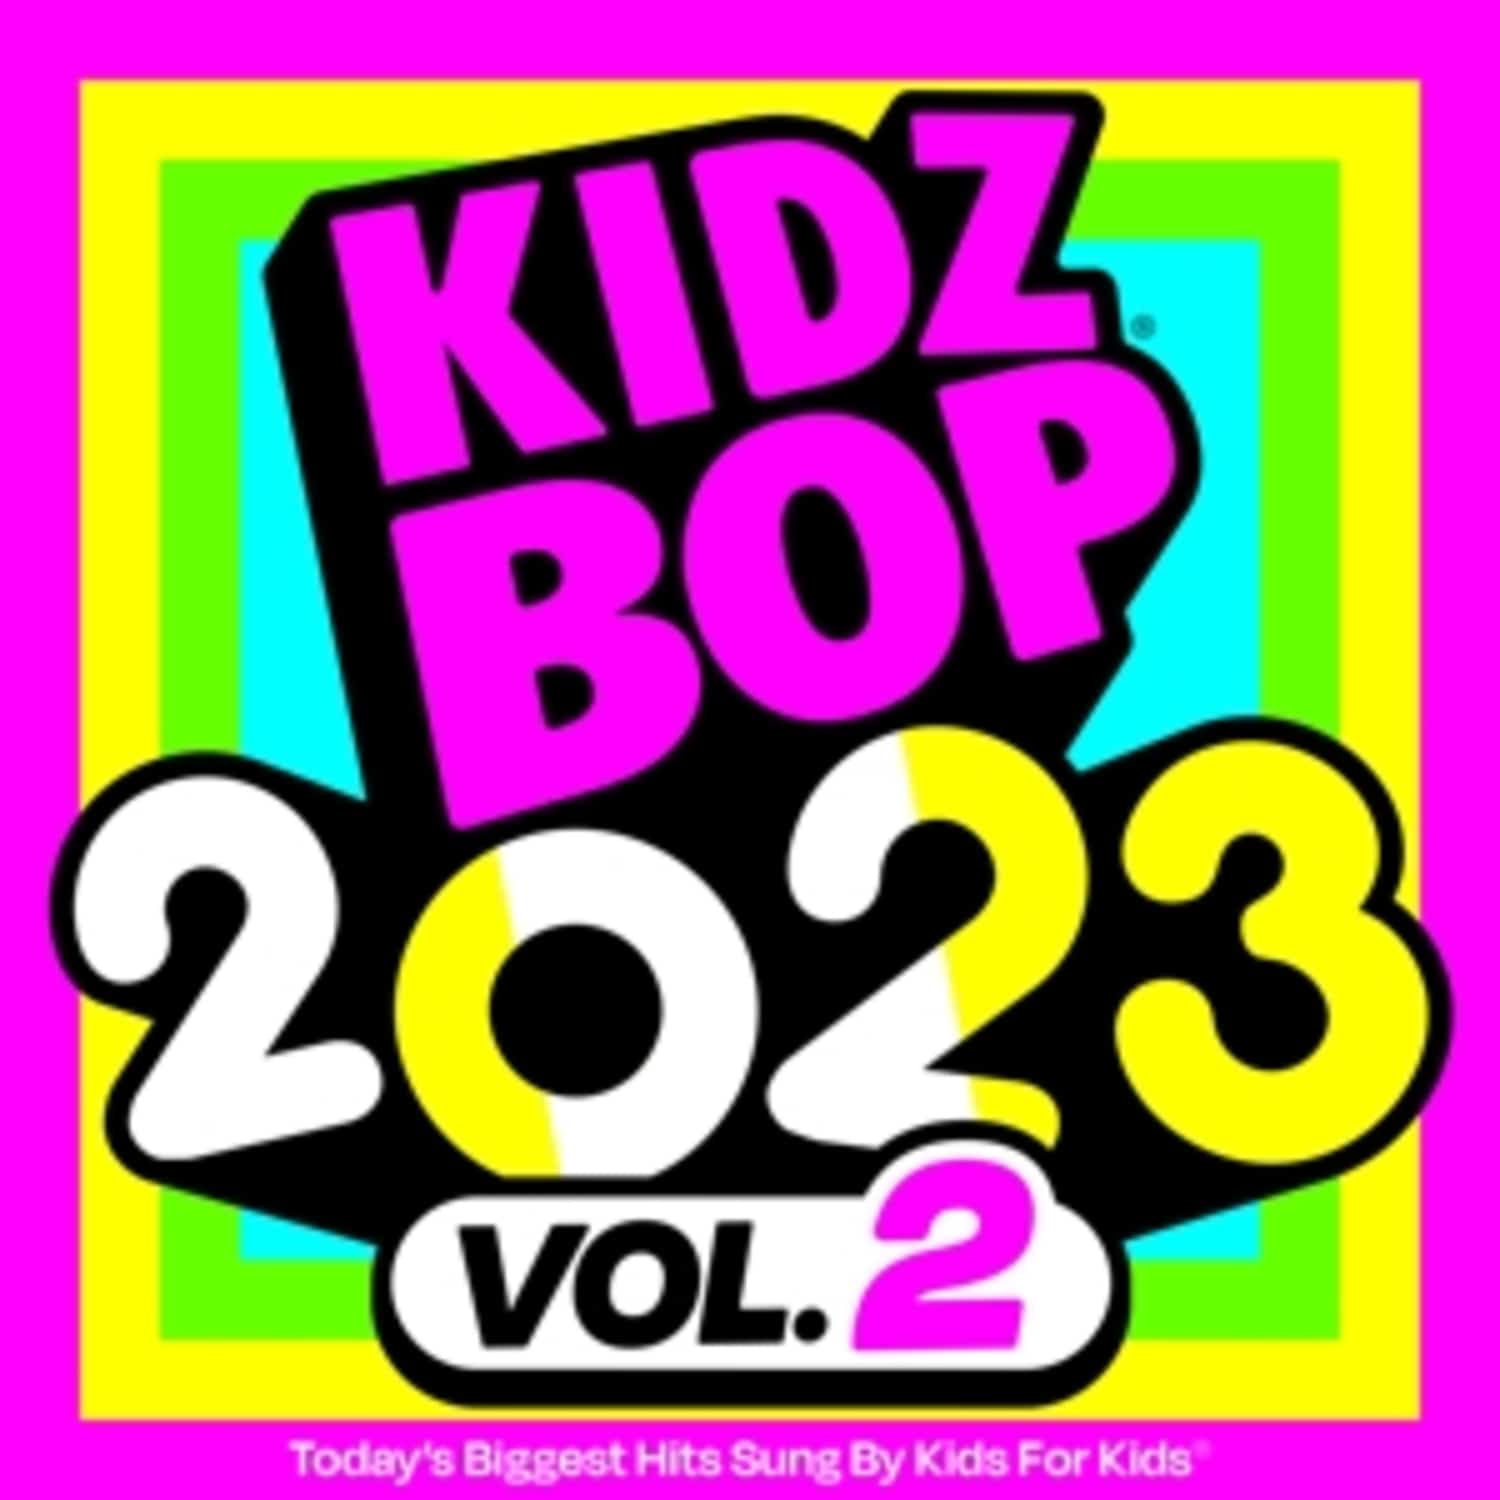 Kidz Bop Kids - KIDZ BOP 2023 VOL 2 